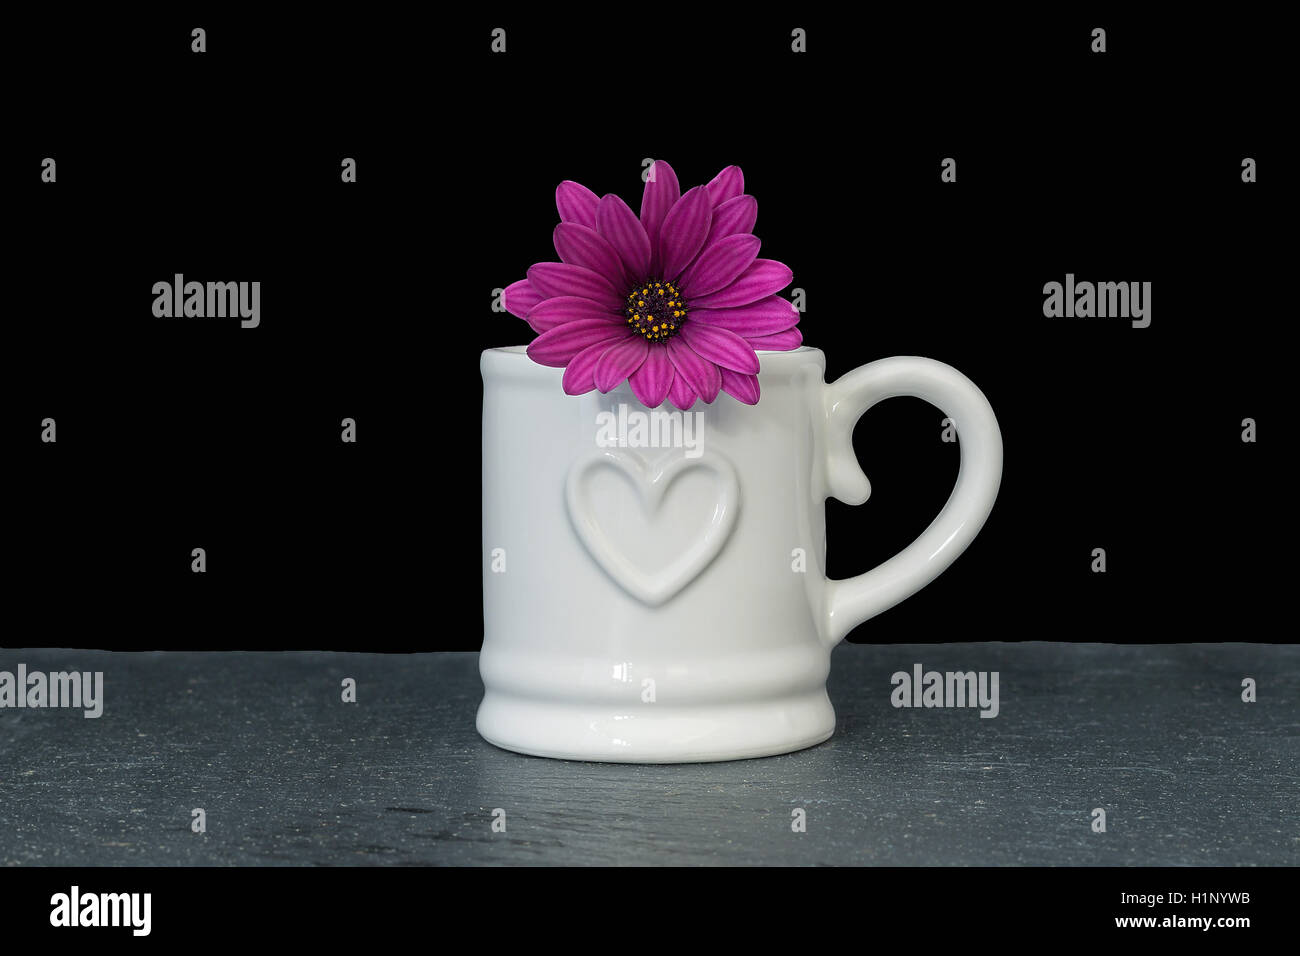 white mug with pink osteospermum on black background Stock Photo